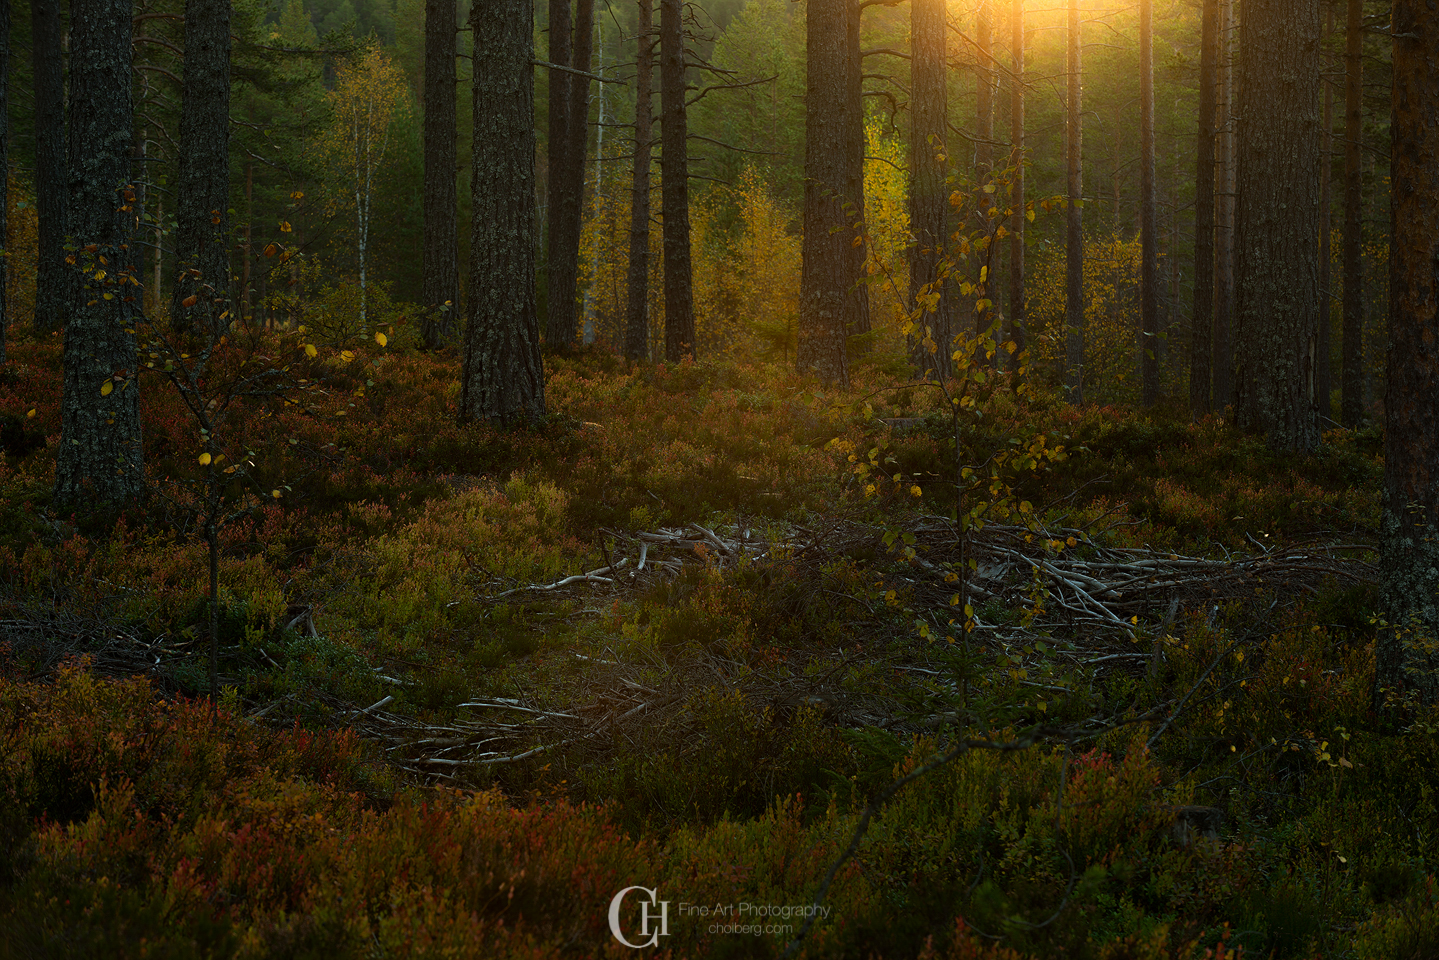 The Norwegian Autumn